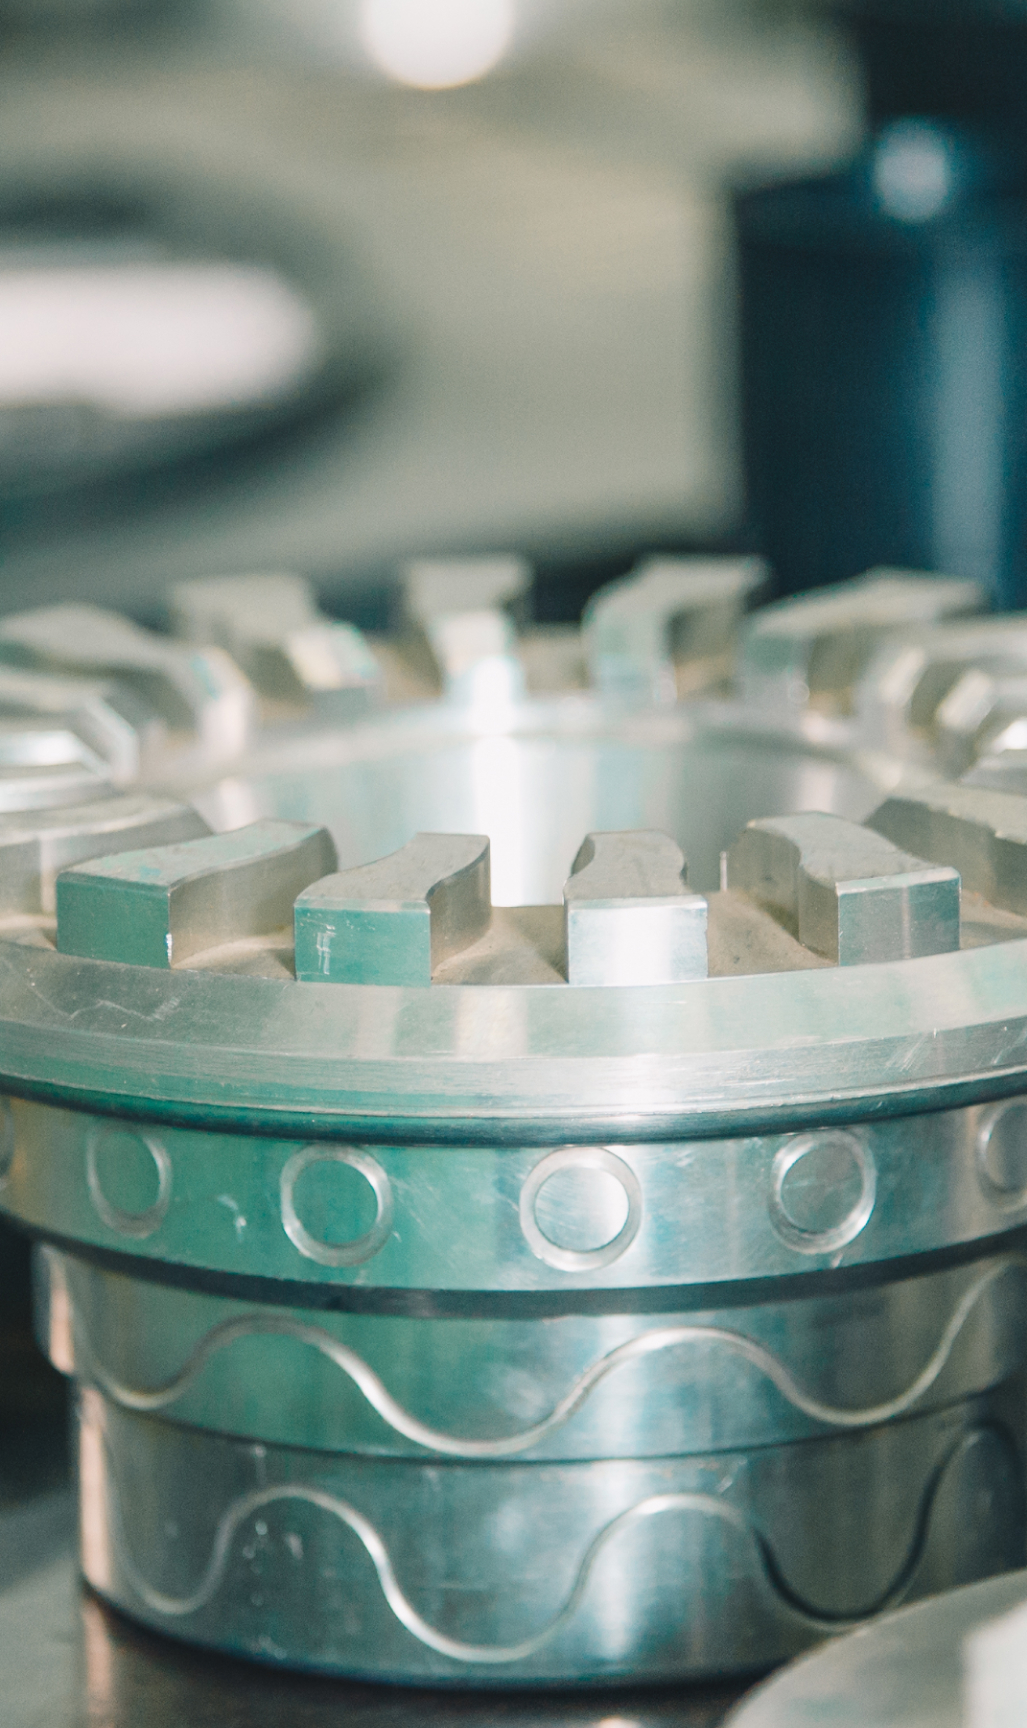 Die Laserschweiß- und -markiermaschinen von Orotig sind ideal für den industriellen Sektor, da sie in automatisierte und nicht automatisierte Produktionsprozesse integriert werden können.